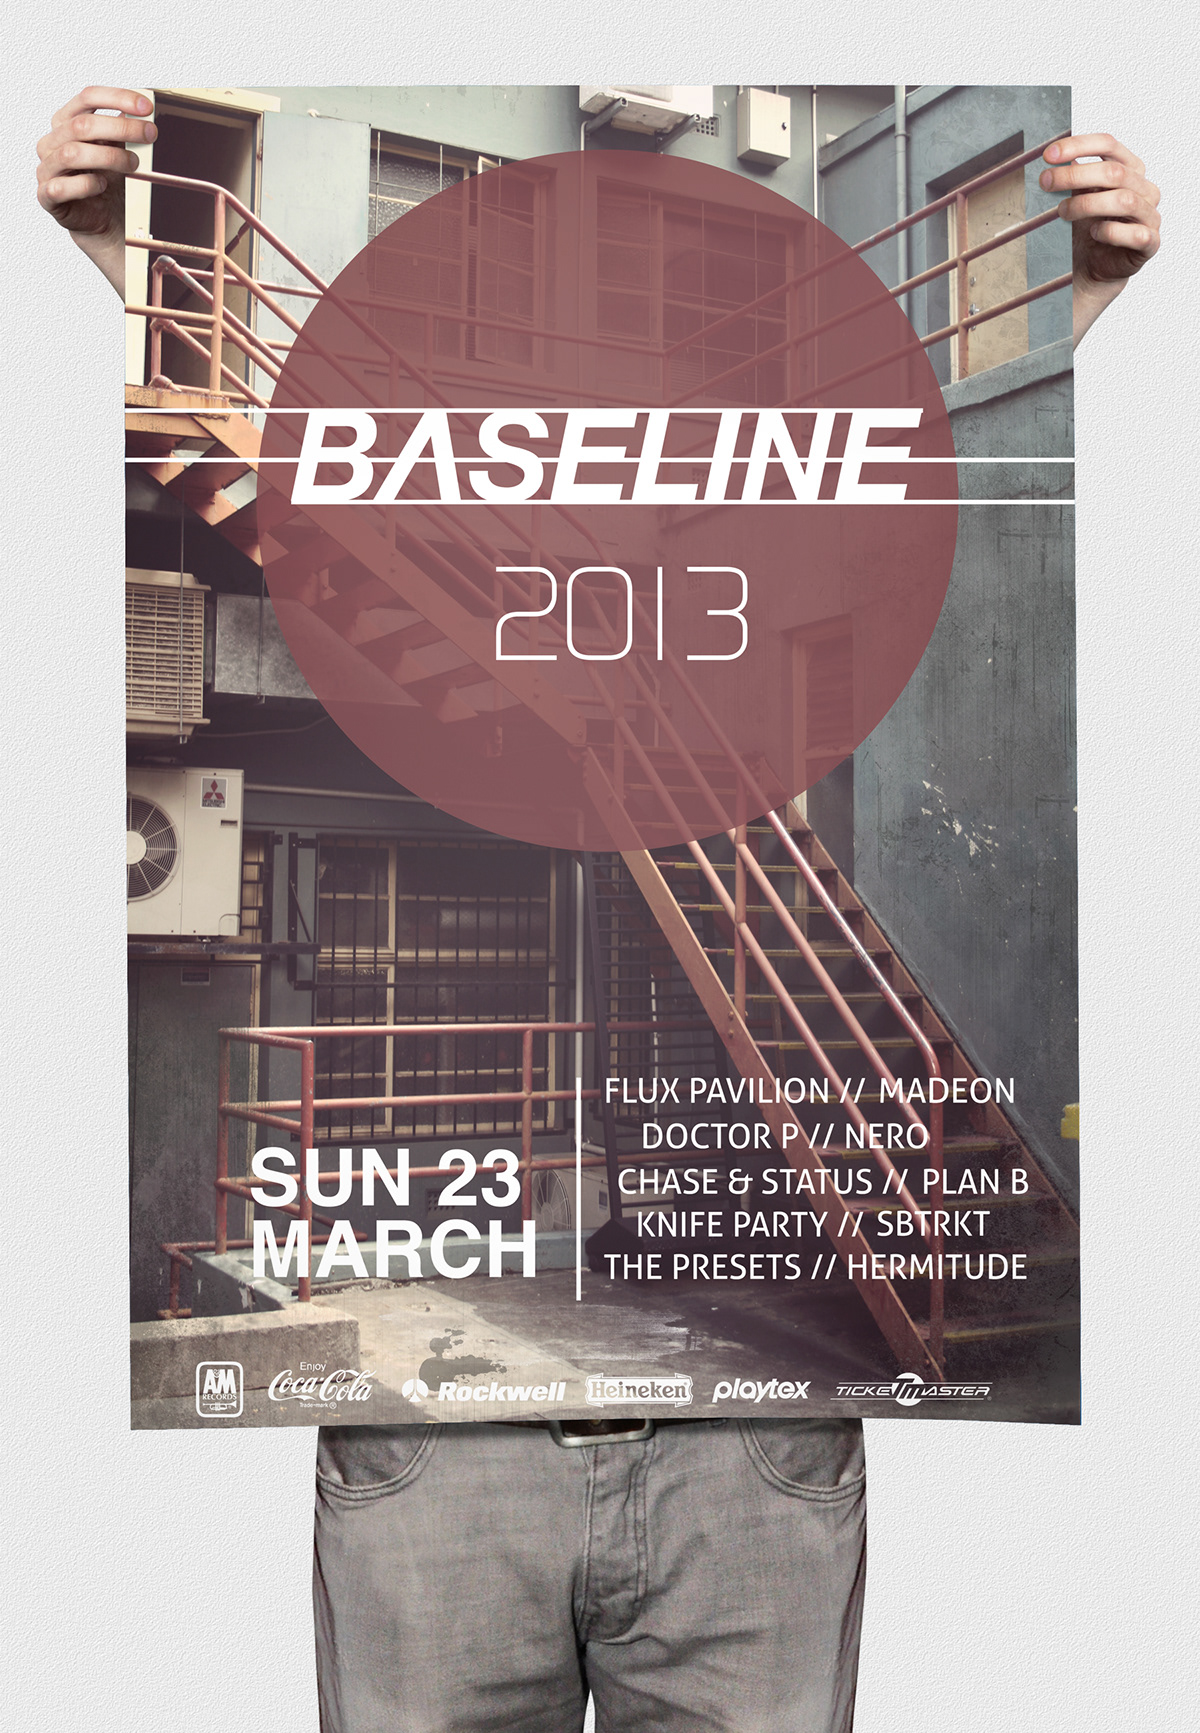 festival merchandise bass base baseline t-shirt ticket Wristband poster app Event dubstep